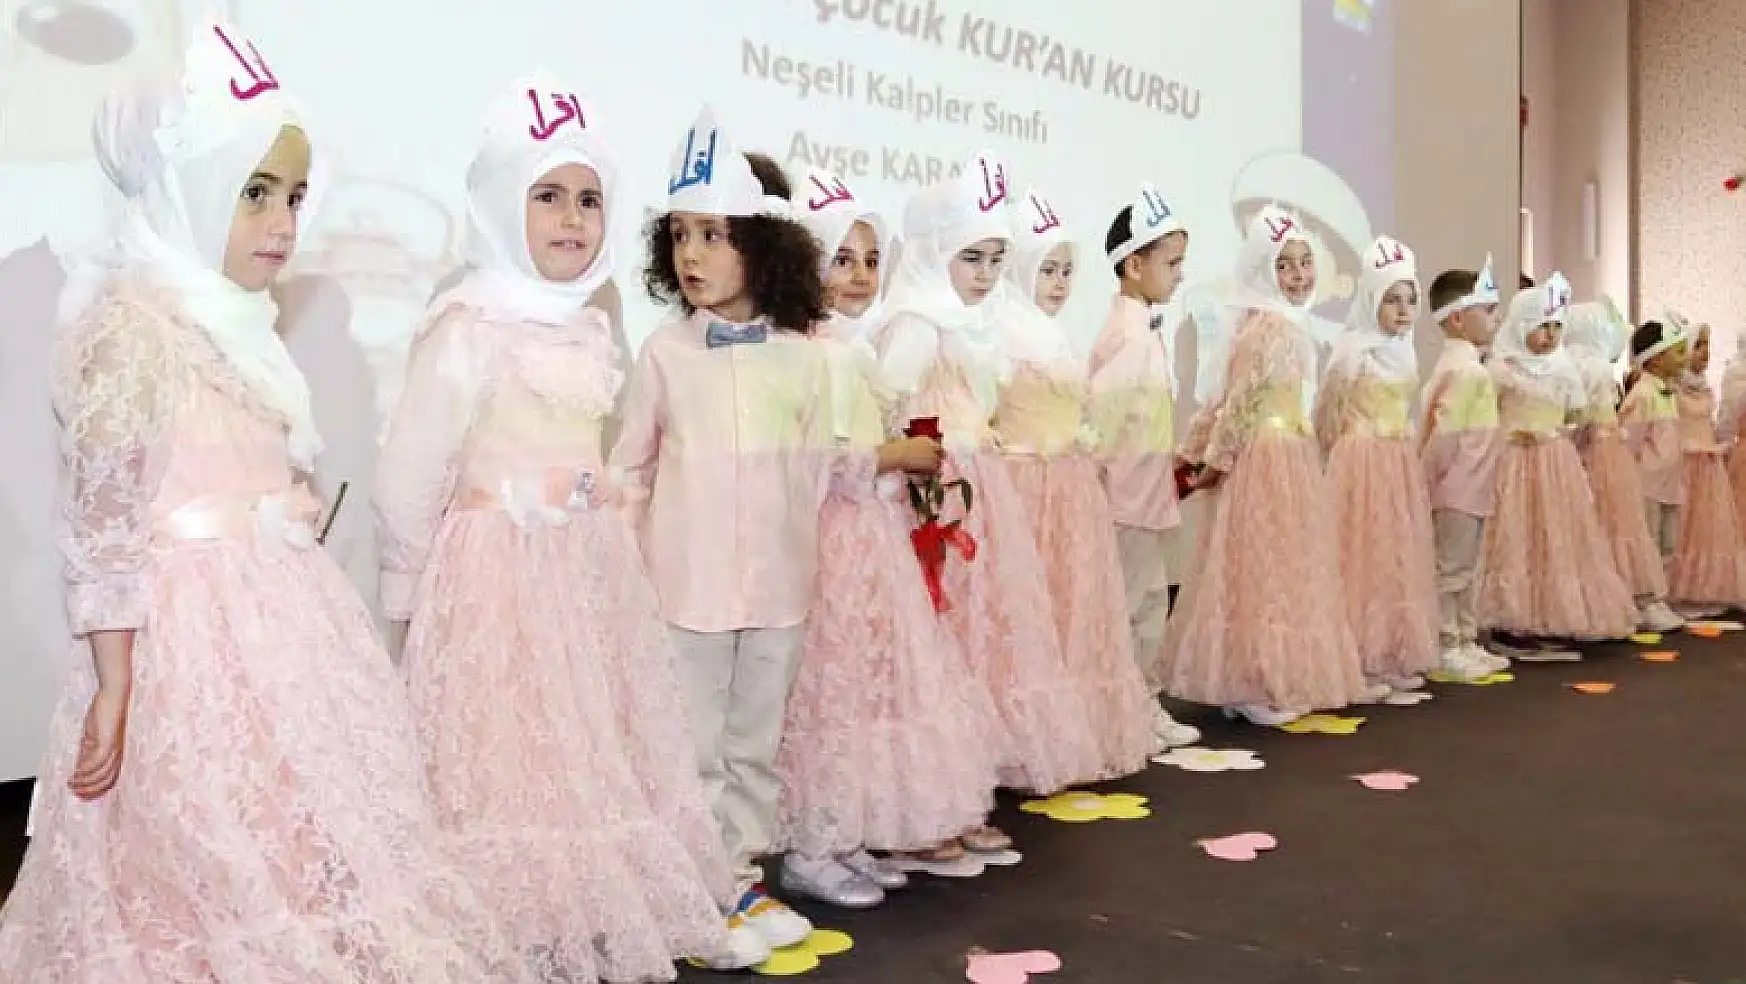 Kur'an kursu öğrencilerine yıl sonu etkinliği düzenlendi